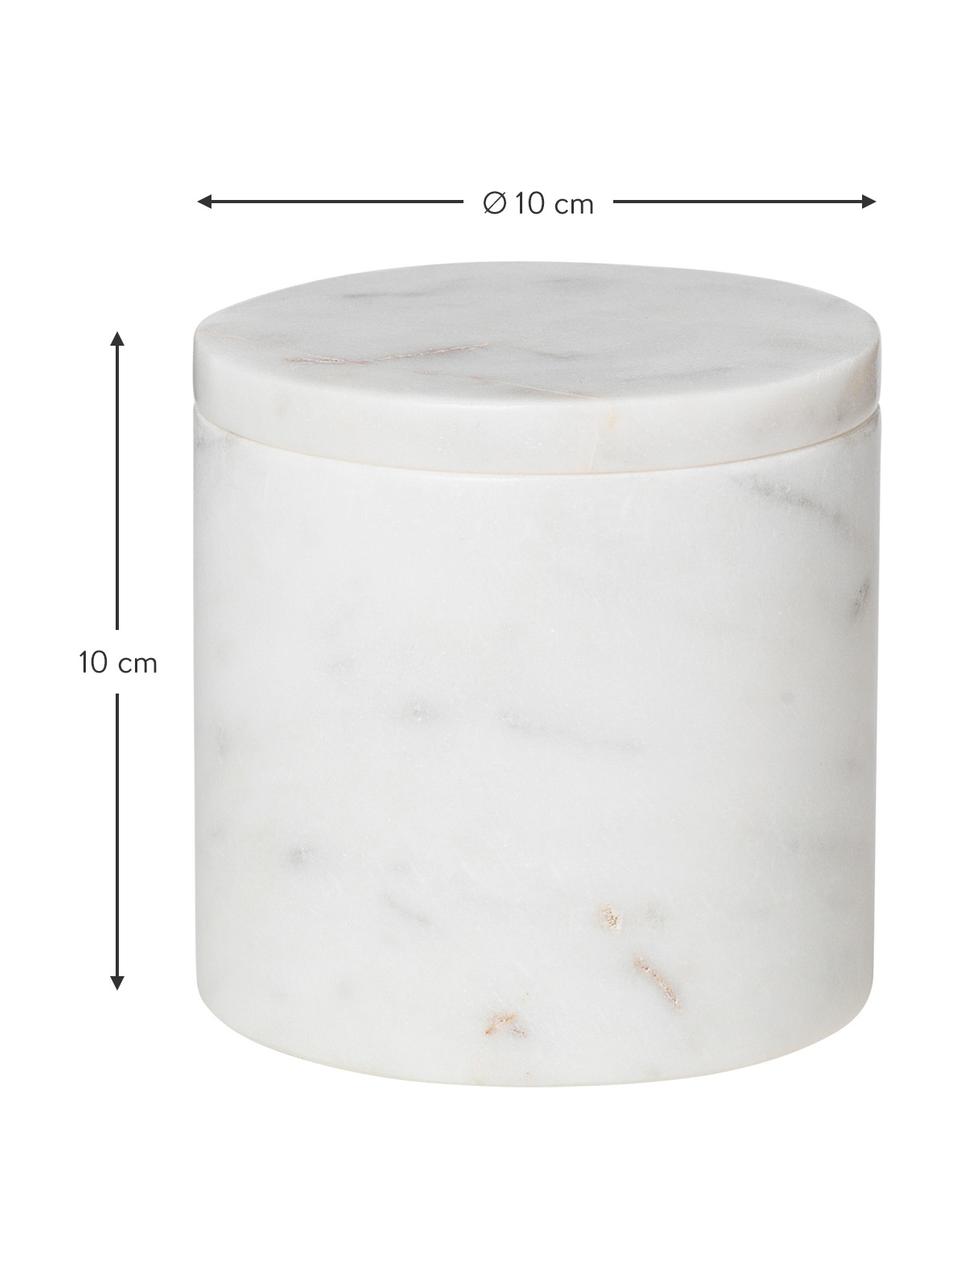 Pojemnik do przechowywania z marmuru Osvald, Marmur

Marmur jest materiałem pochodzenia naturalnego, dlatego produkt może nieznacznie różnić się kolorem i kształtem od przedstawionego na zdjęciu, Jasny marmur, Ø 10 x W 10 cm